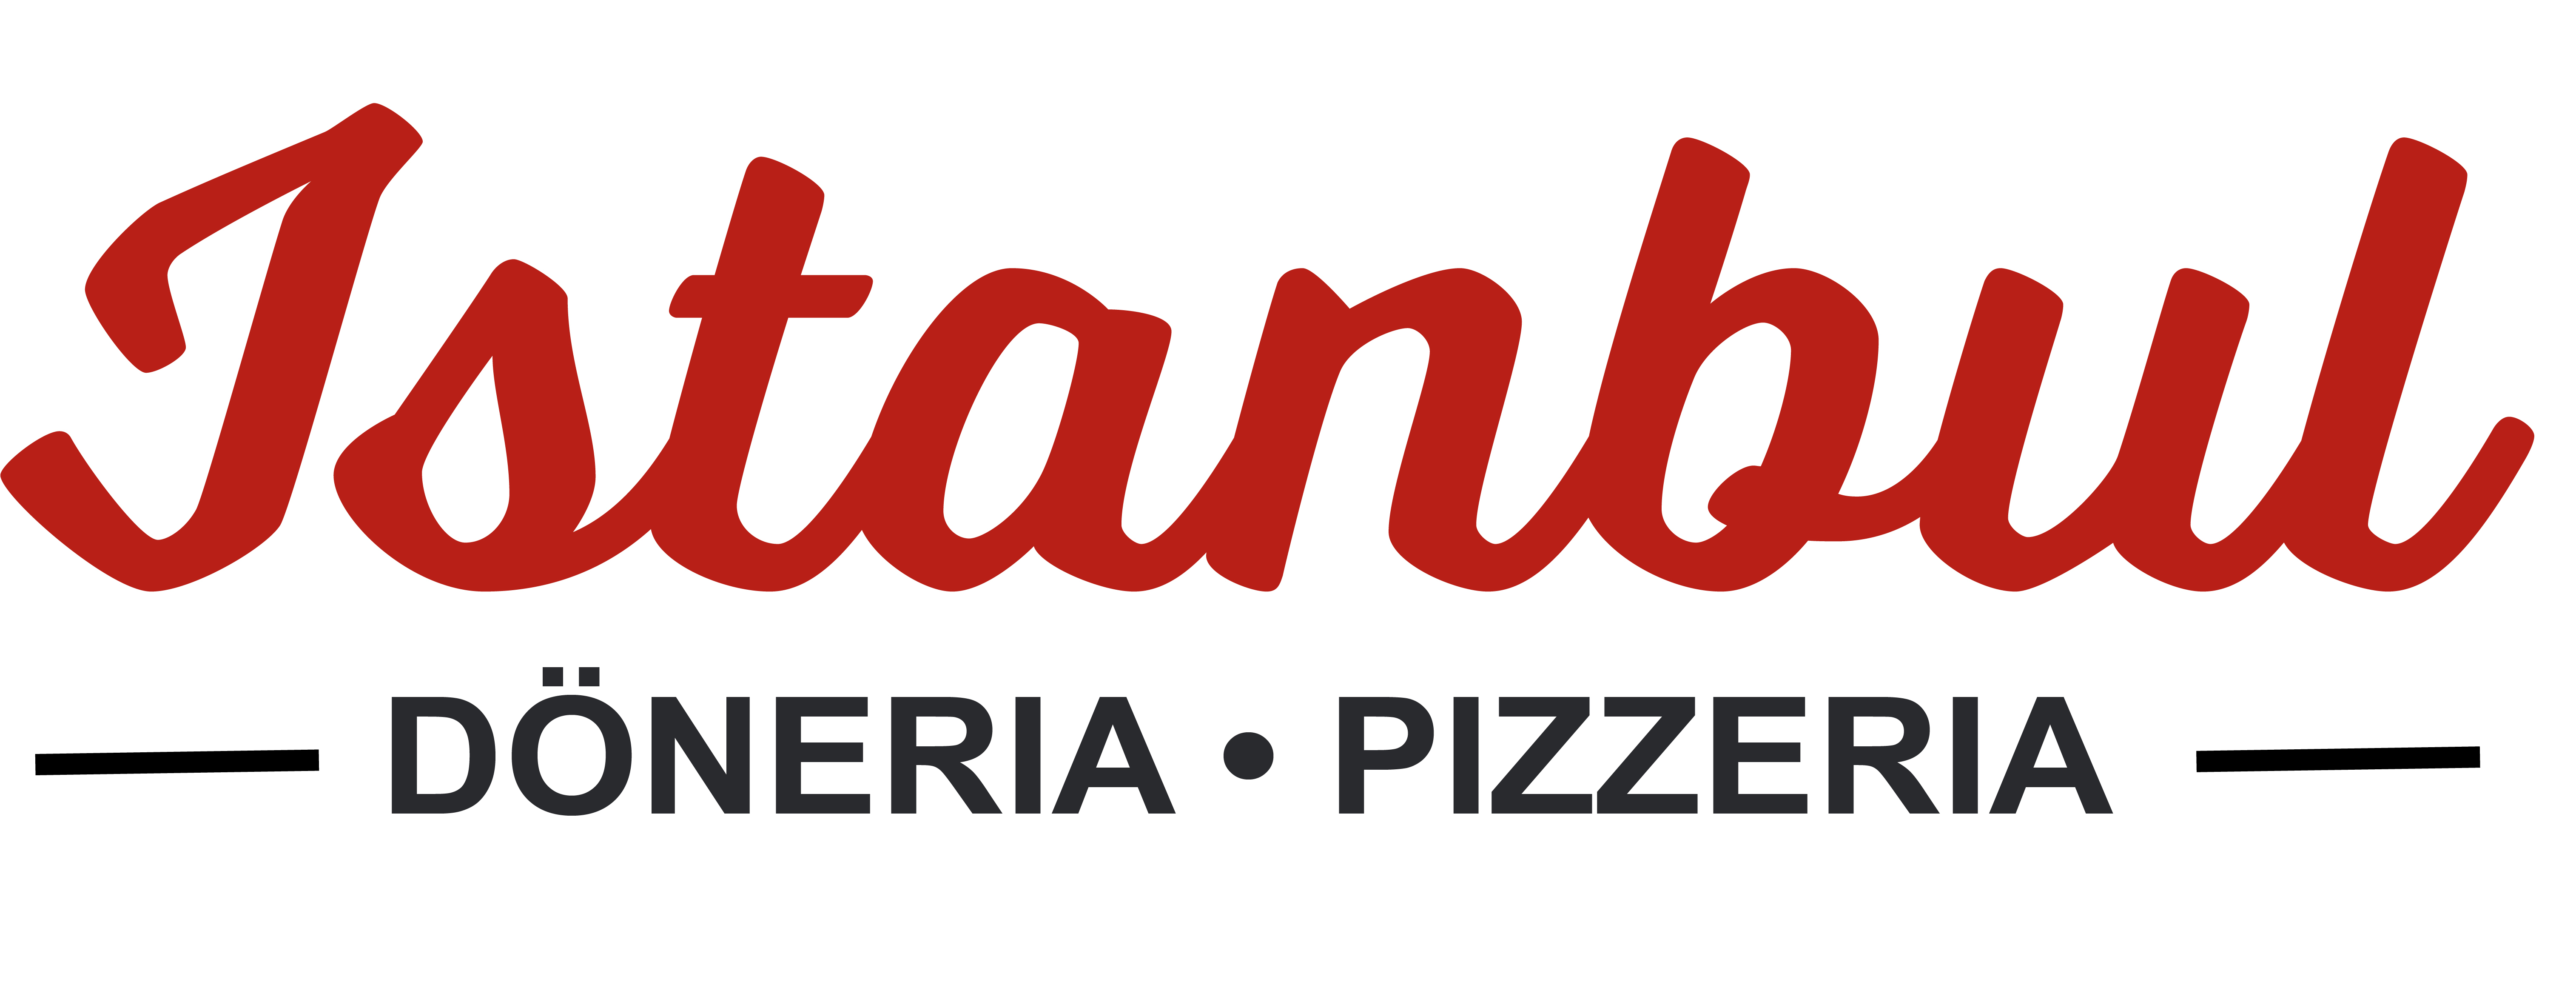 Istanbul D�neria und Pizzeria